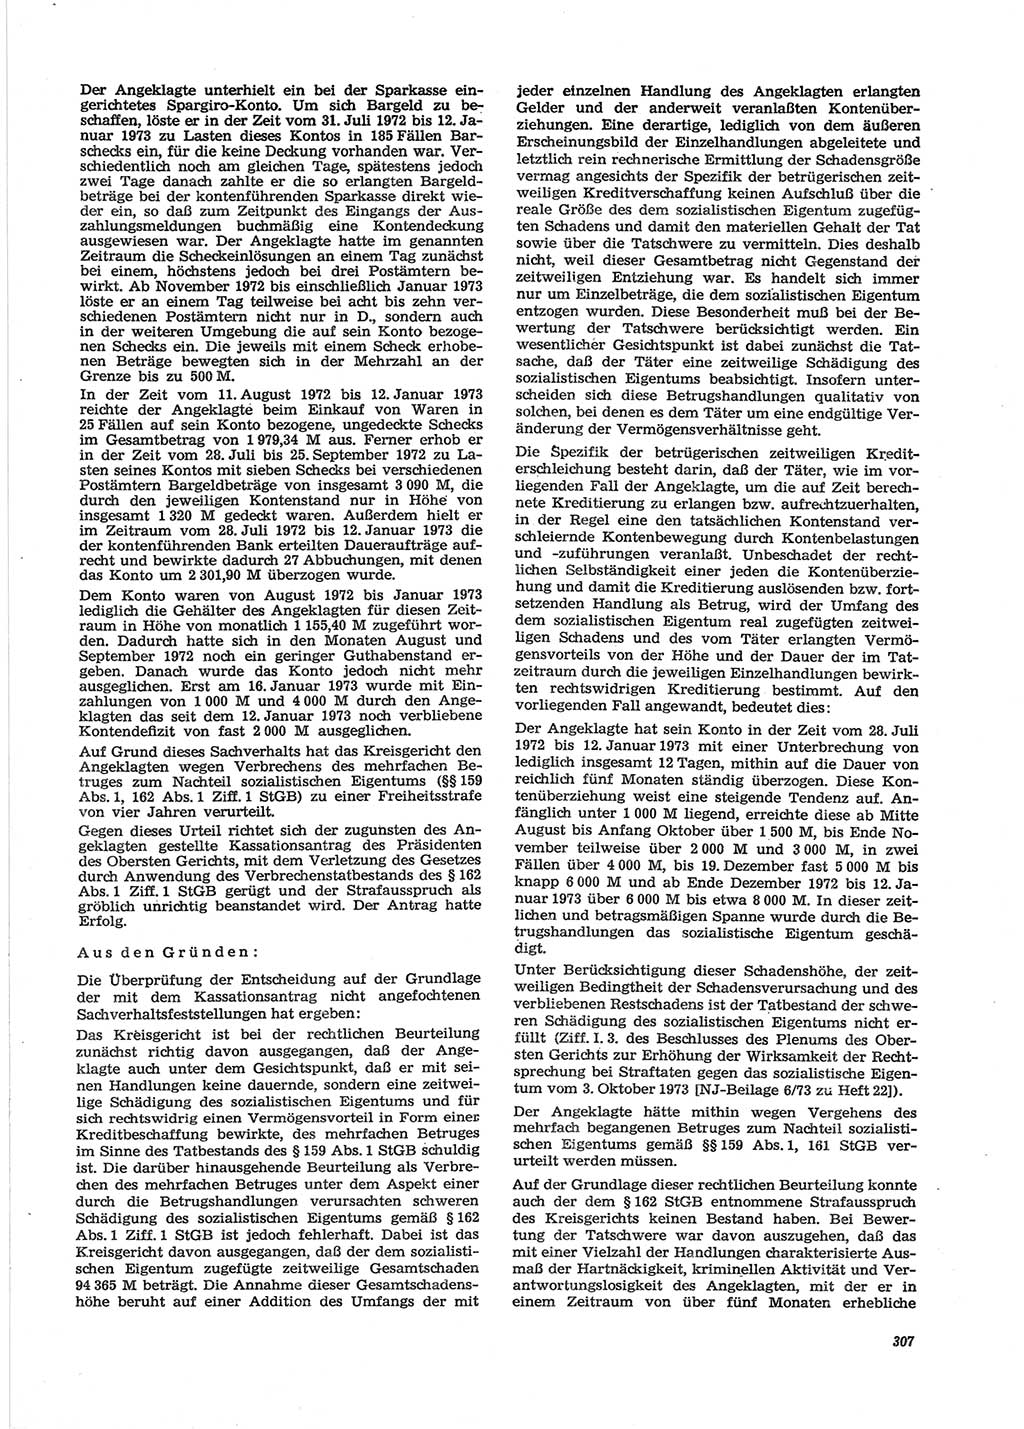 Neue Justiz (NJ), Zeitschrift für Recht und Rechtswissenschaft [Deutsche Demokratische Republik (DDR)], 28. Jahrgang 1974, Seite 307 (NJ DDR 1974, S. 307)